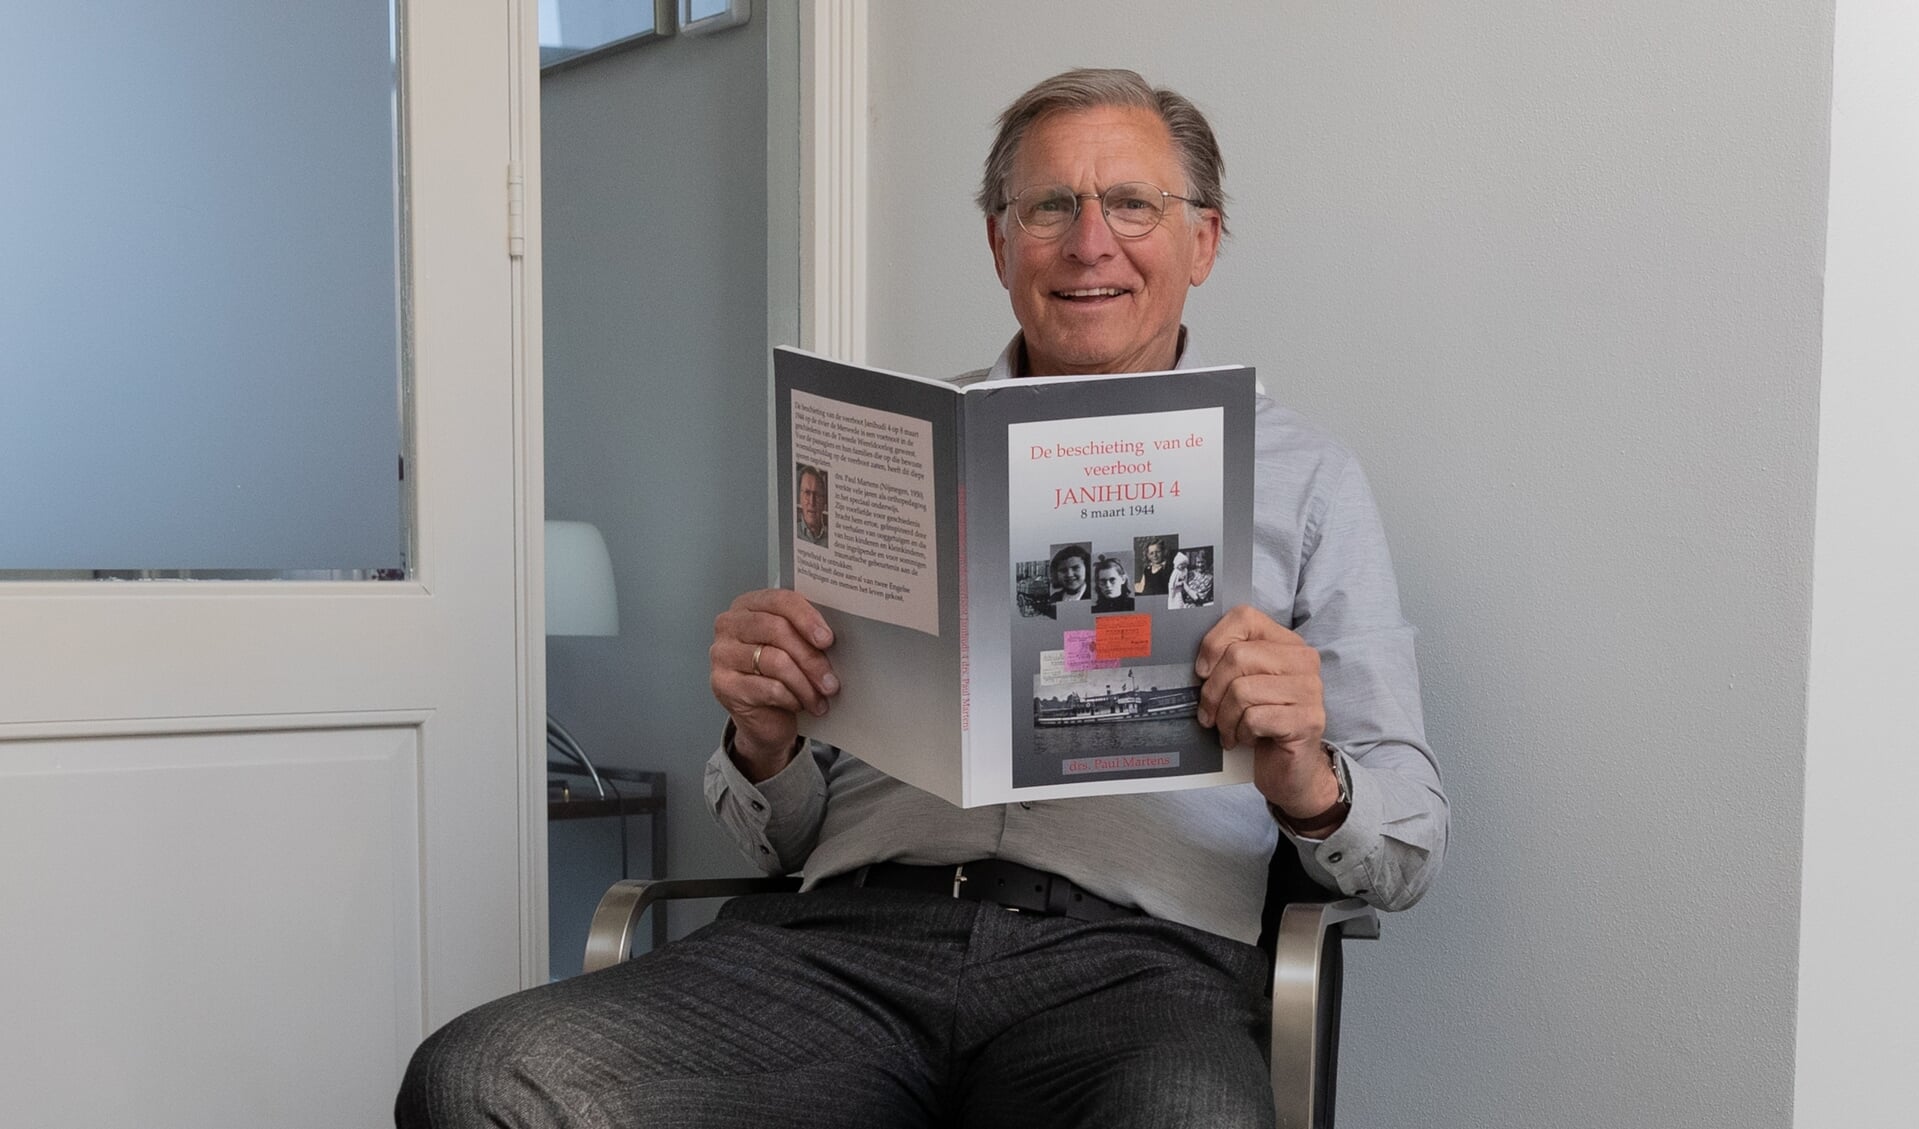 • Drs. Paul Martens met het boek 'De beschieting van de veerboot Janihudi 4'. 